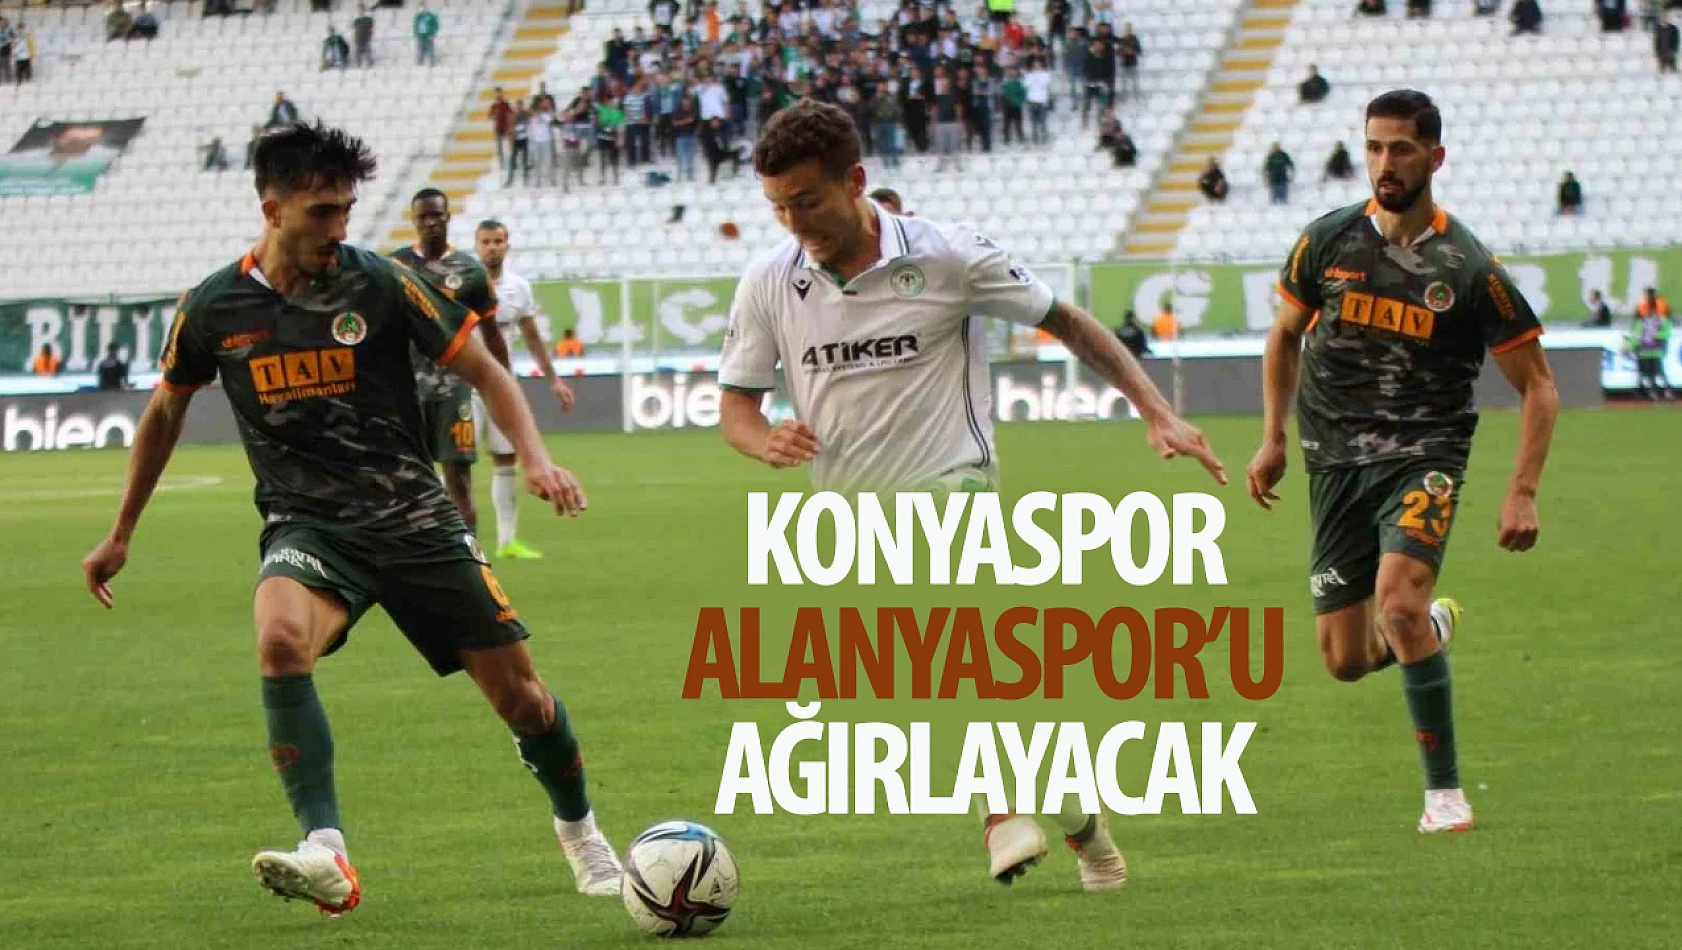 Konyaspor Alanyaspor'u ağırlayacak